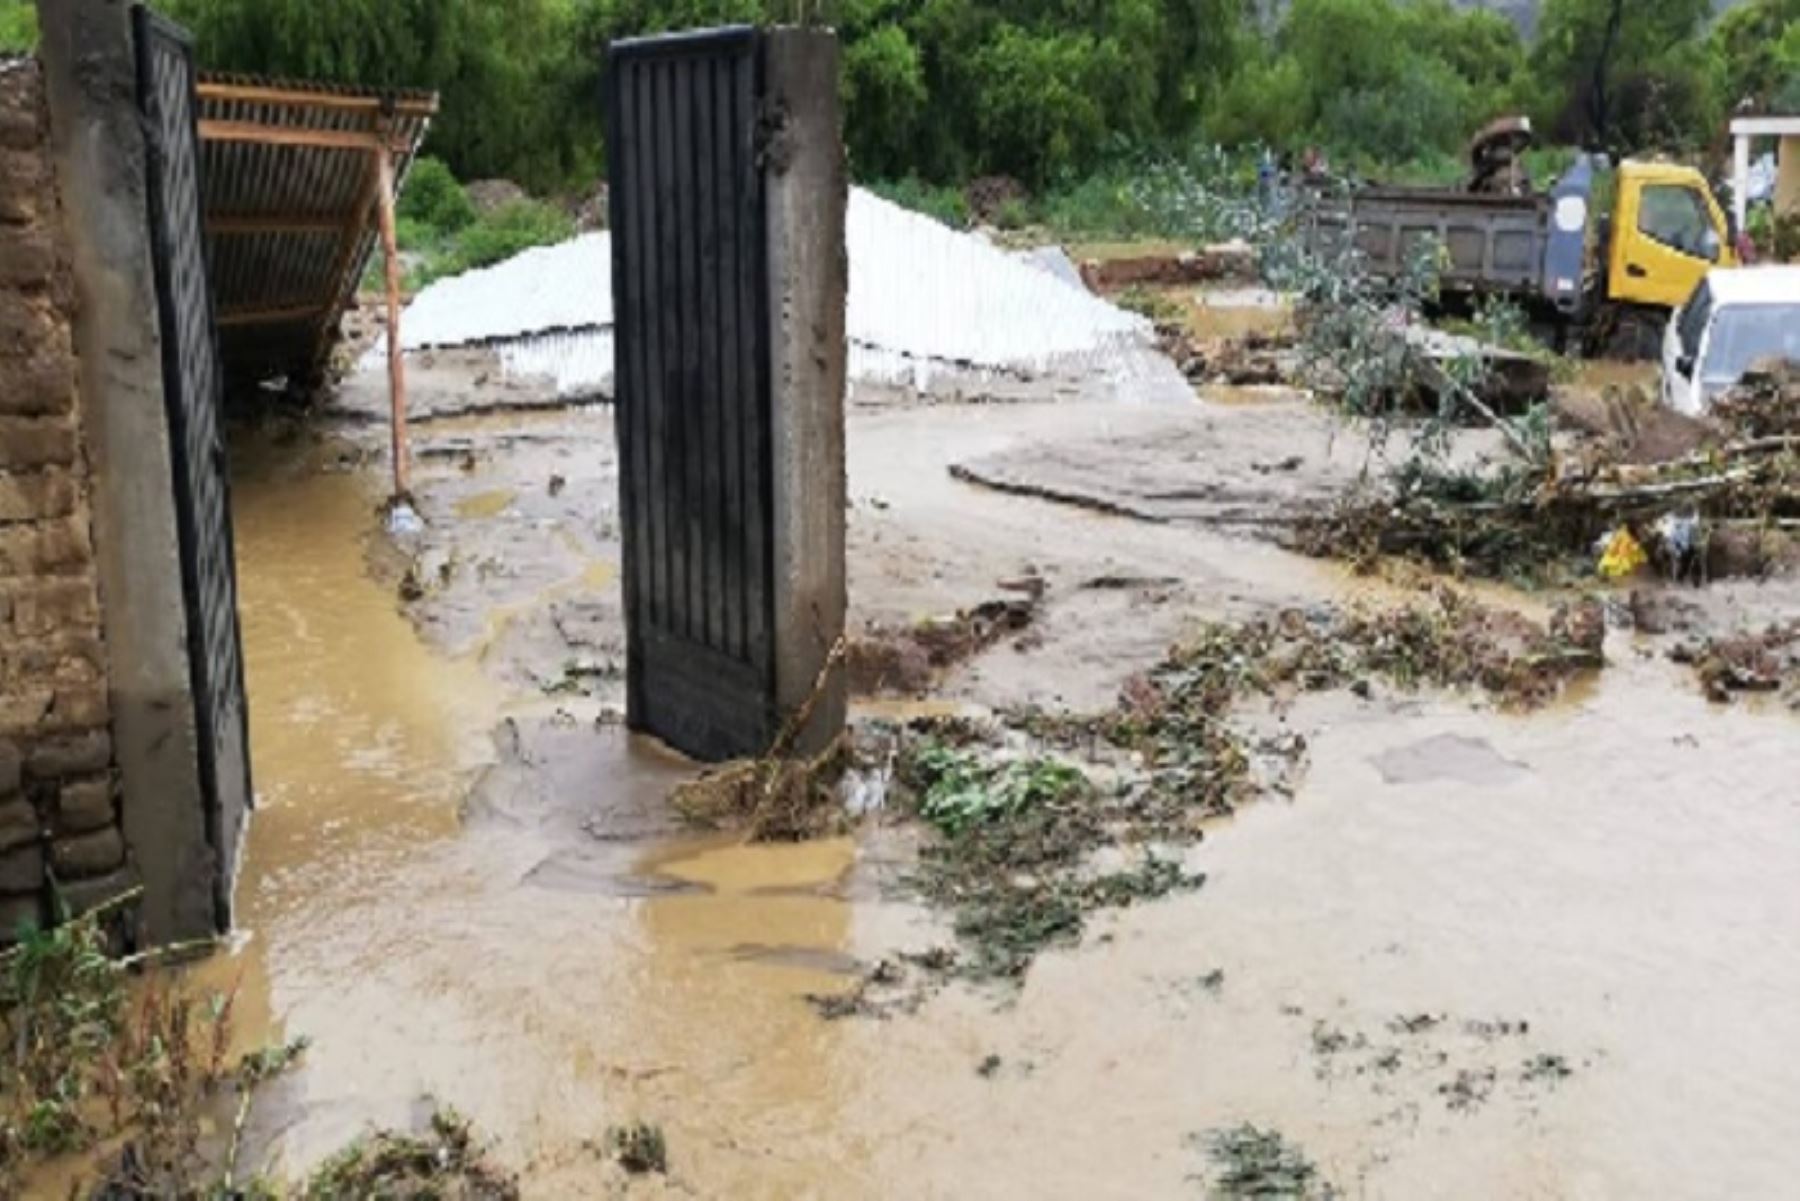 Personal de Defensa Civil de la Municipalidad Distrital de Amarilis, en la provincia de Huánuco, viene atendiendo la emergencia en la zona de Jancao, La Esperanza, donde al menos 10 viviendas se inundaron tras el desborde del río, y una de ellas colapsó.